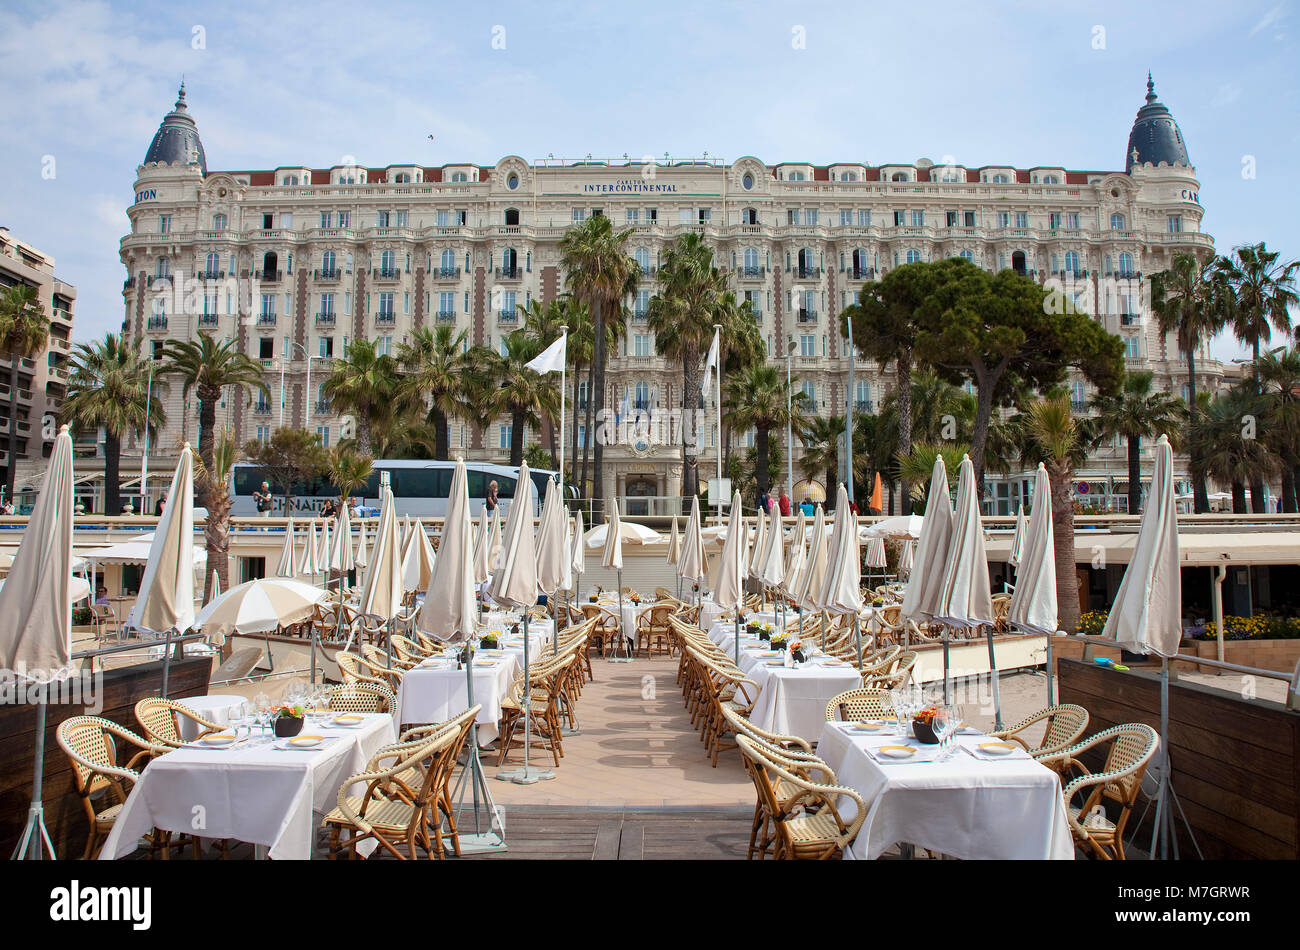 Restaurant de plage de l'Hôtel Carlton Intercontinental, Cannes, Côte d'Azur, France Sud, France, Europe Banque D'Images